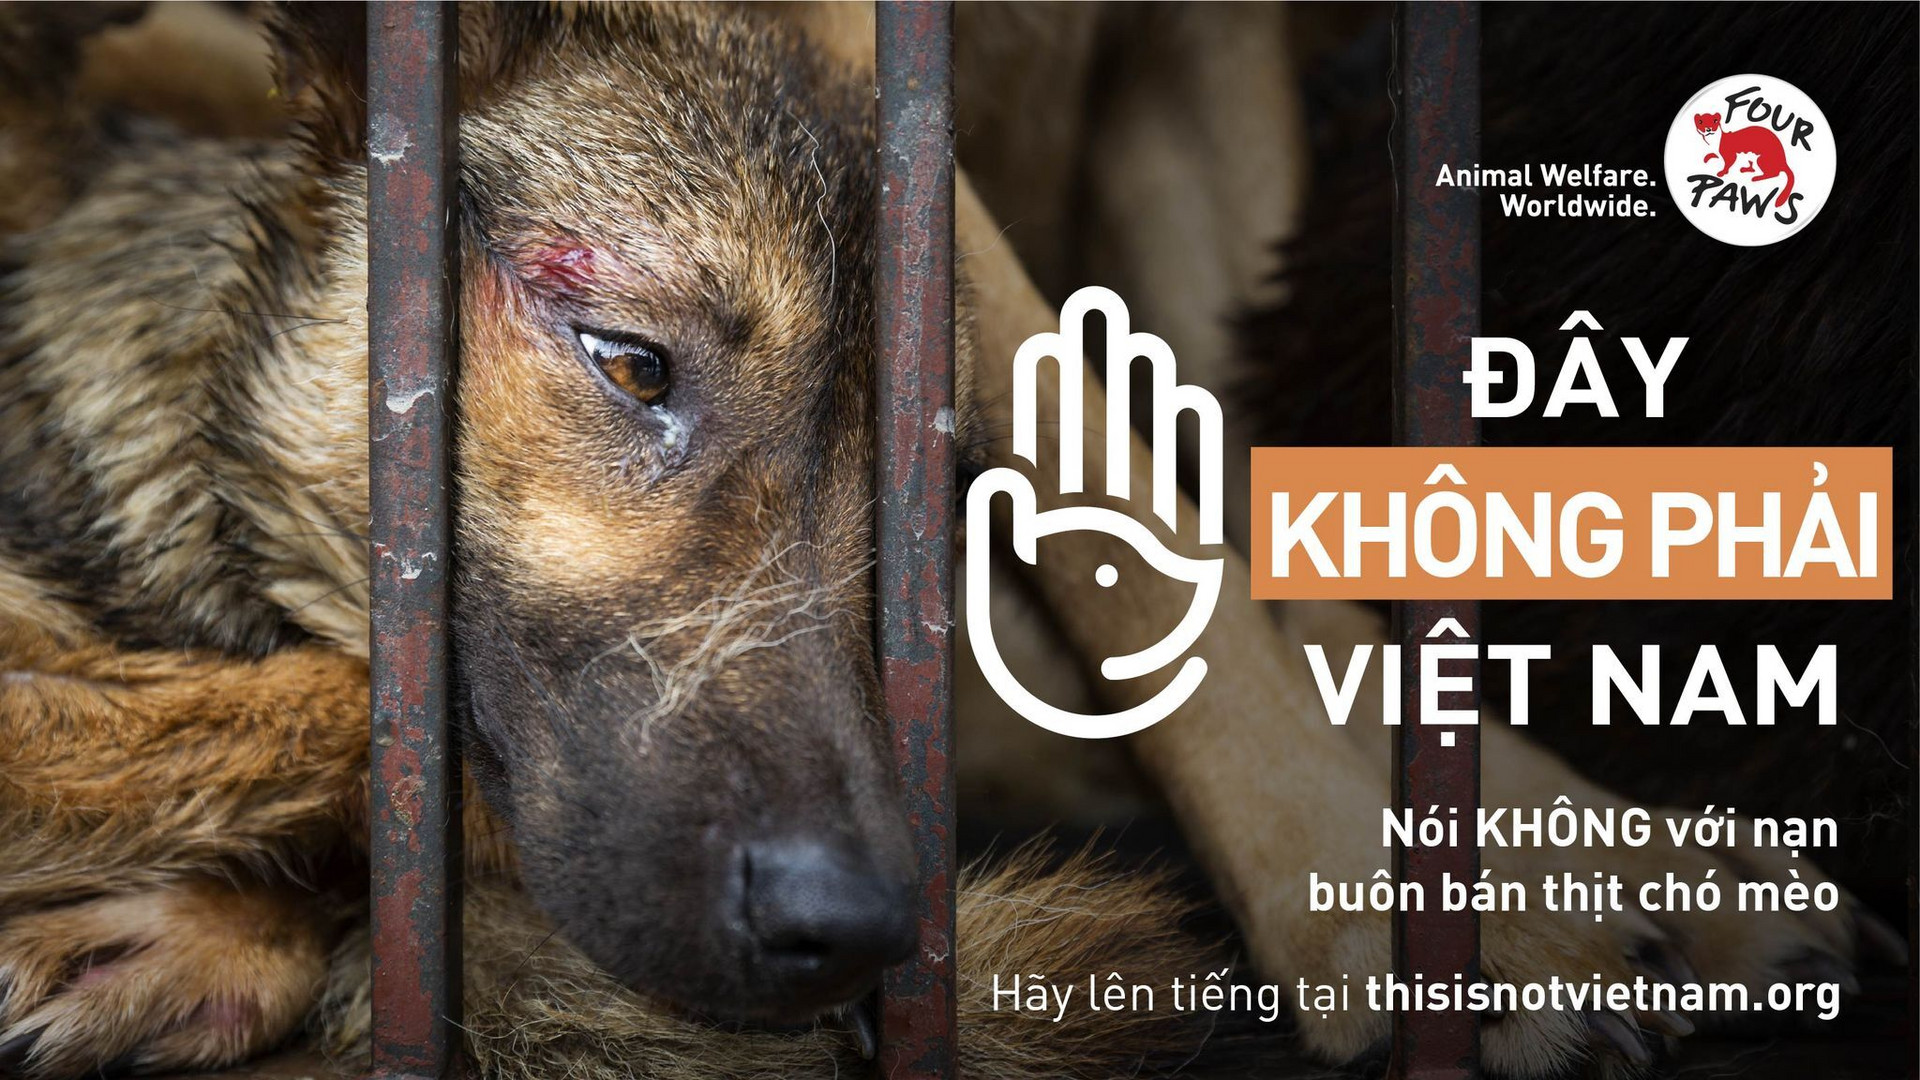 Phát động chiến dịch chấm dứt nạn buôn bán chó, mèo tại Việt Nam - 3